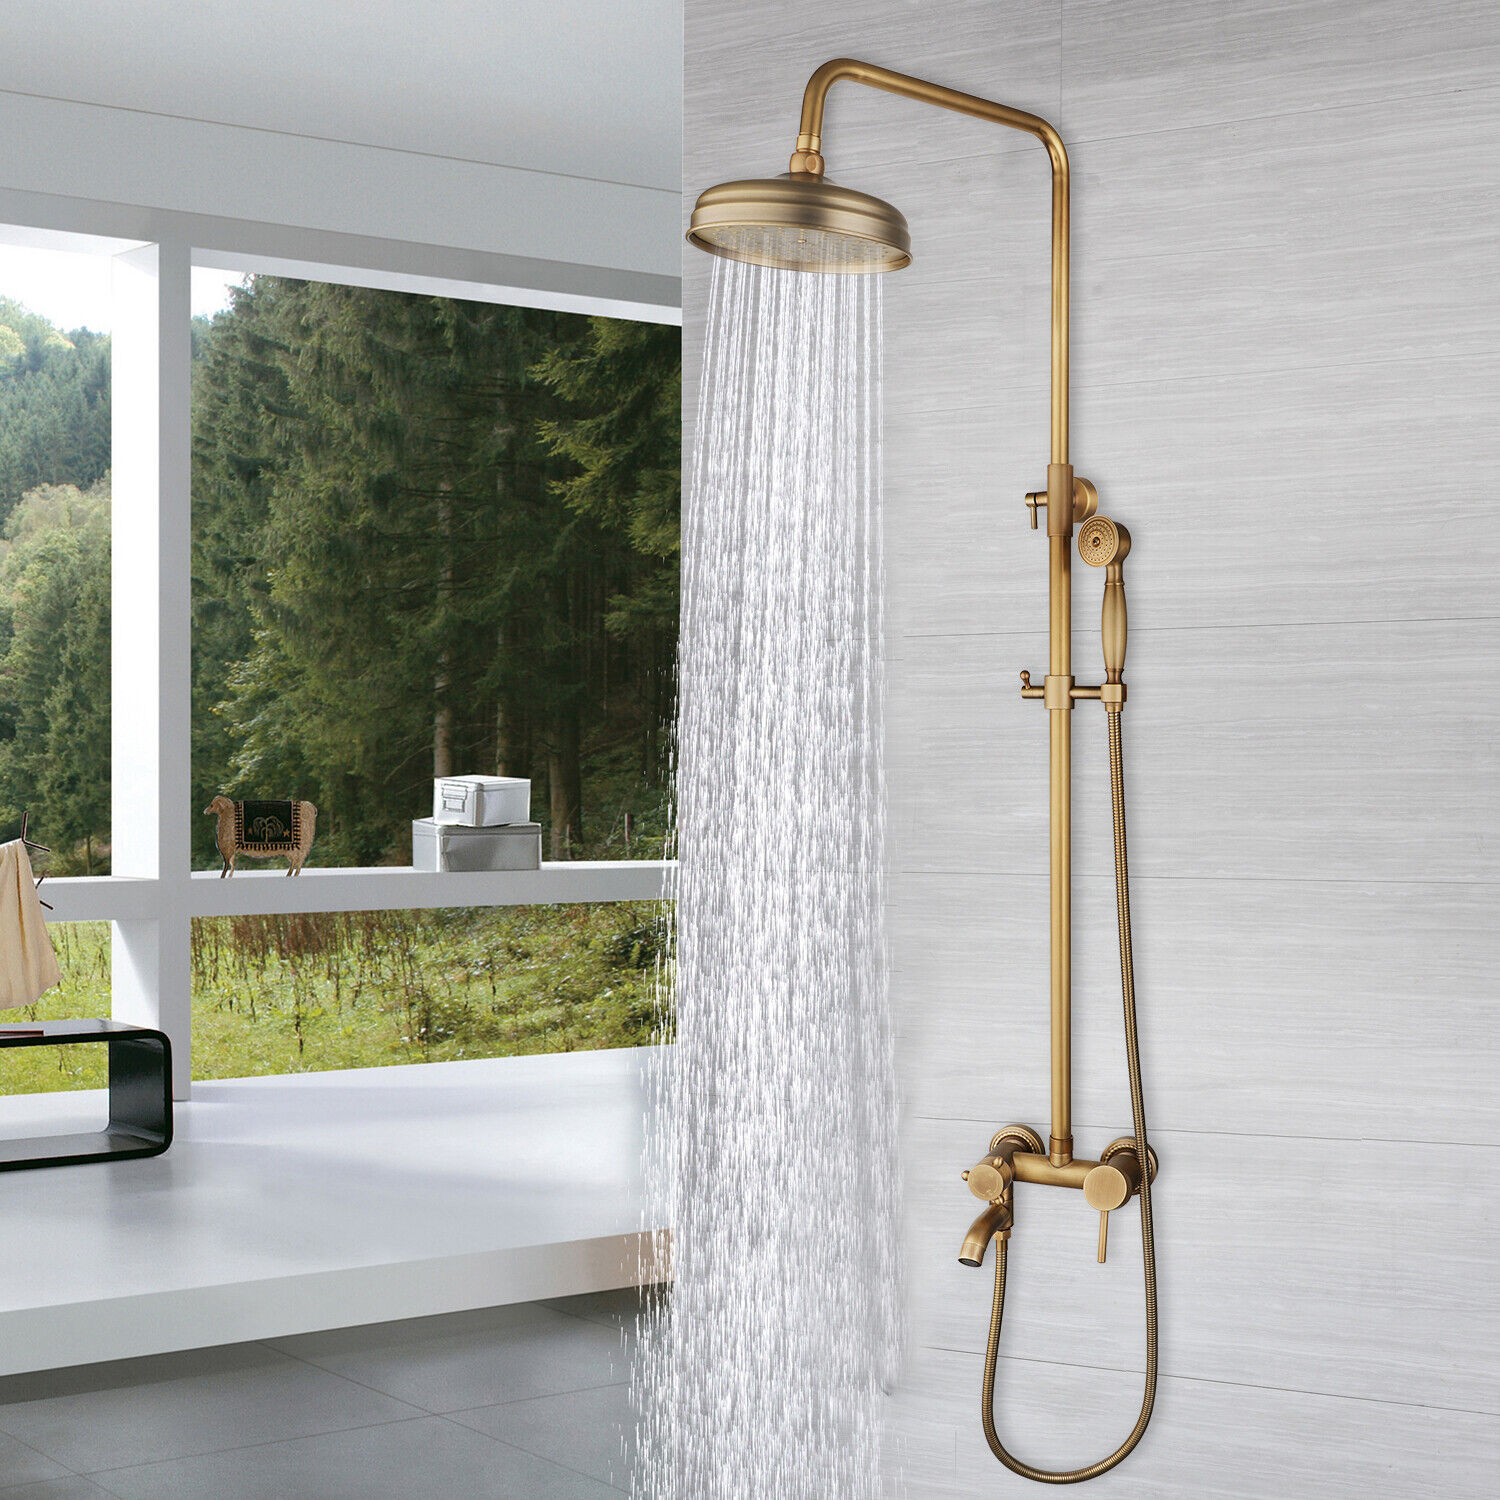 3-Way Antique Brass Bathroom Shower Faucet Set Rain Heads Wall Mounted Mixer Tap